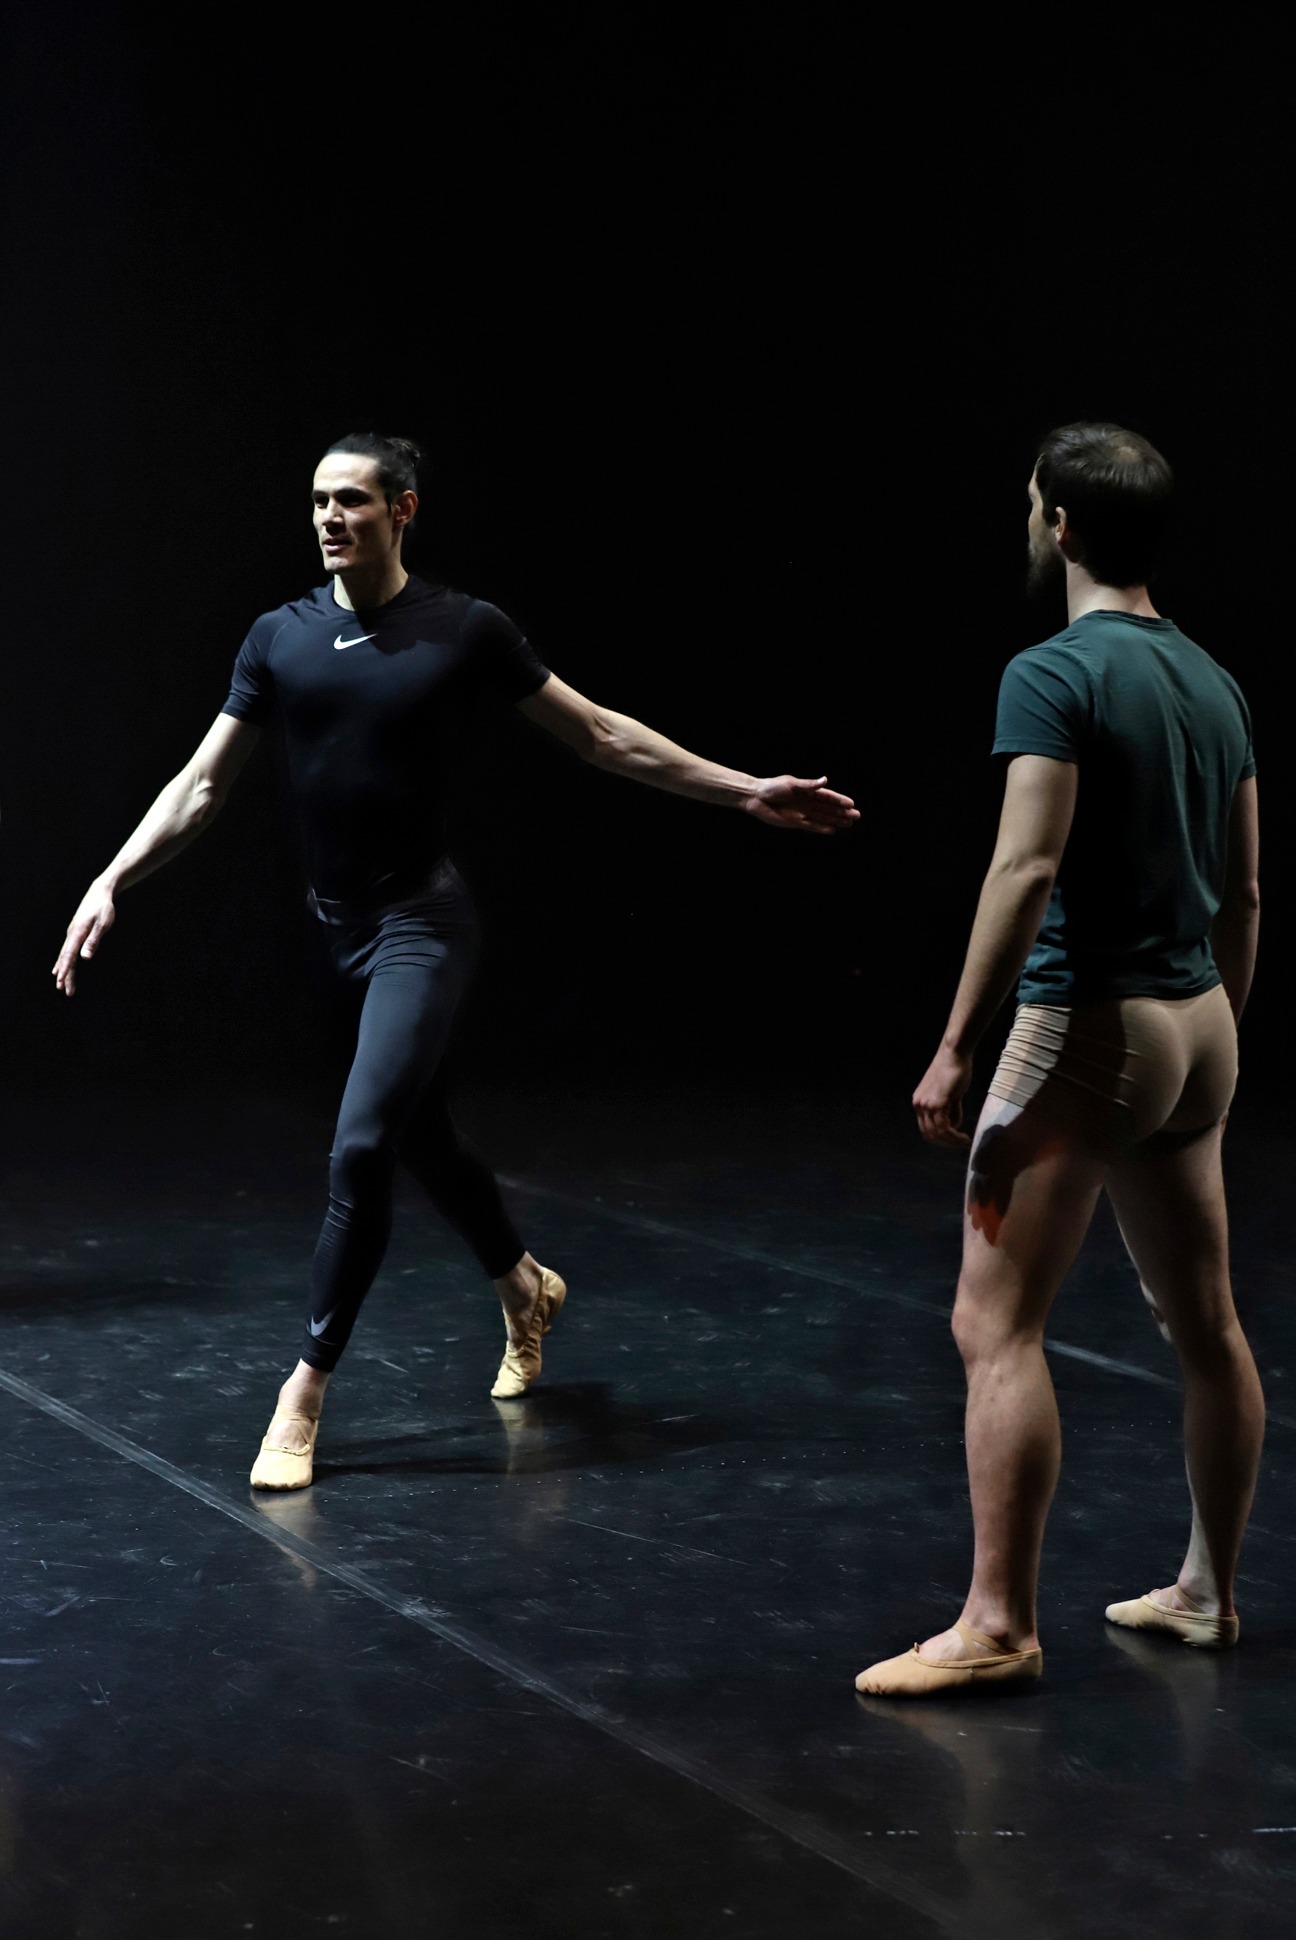 El goleador Edinson Cavani baila para promover el ballet entre varones en Uruguay | Foto: AFP.